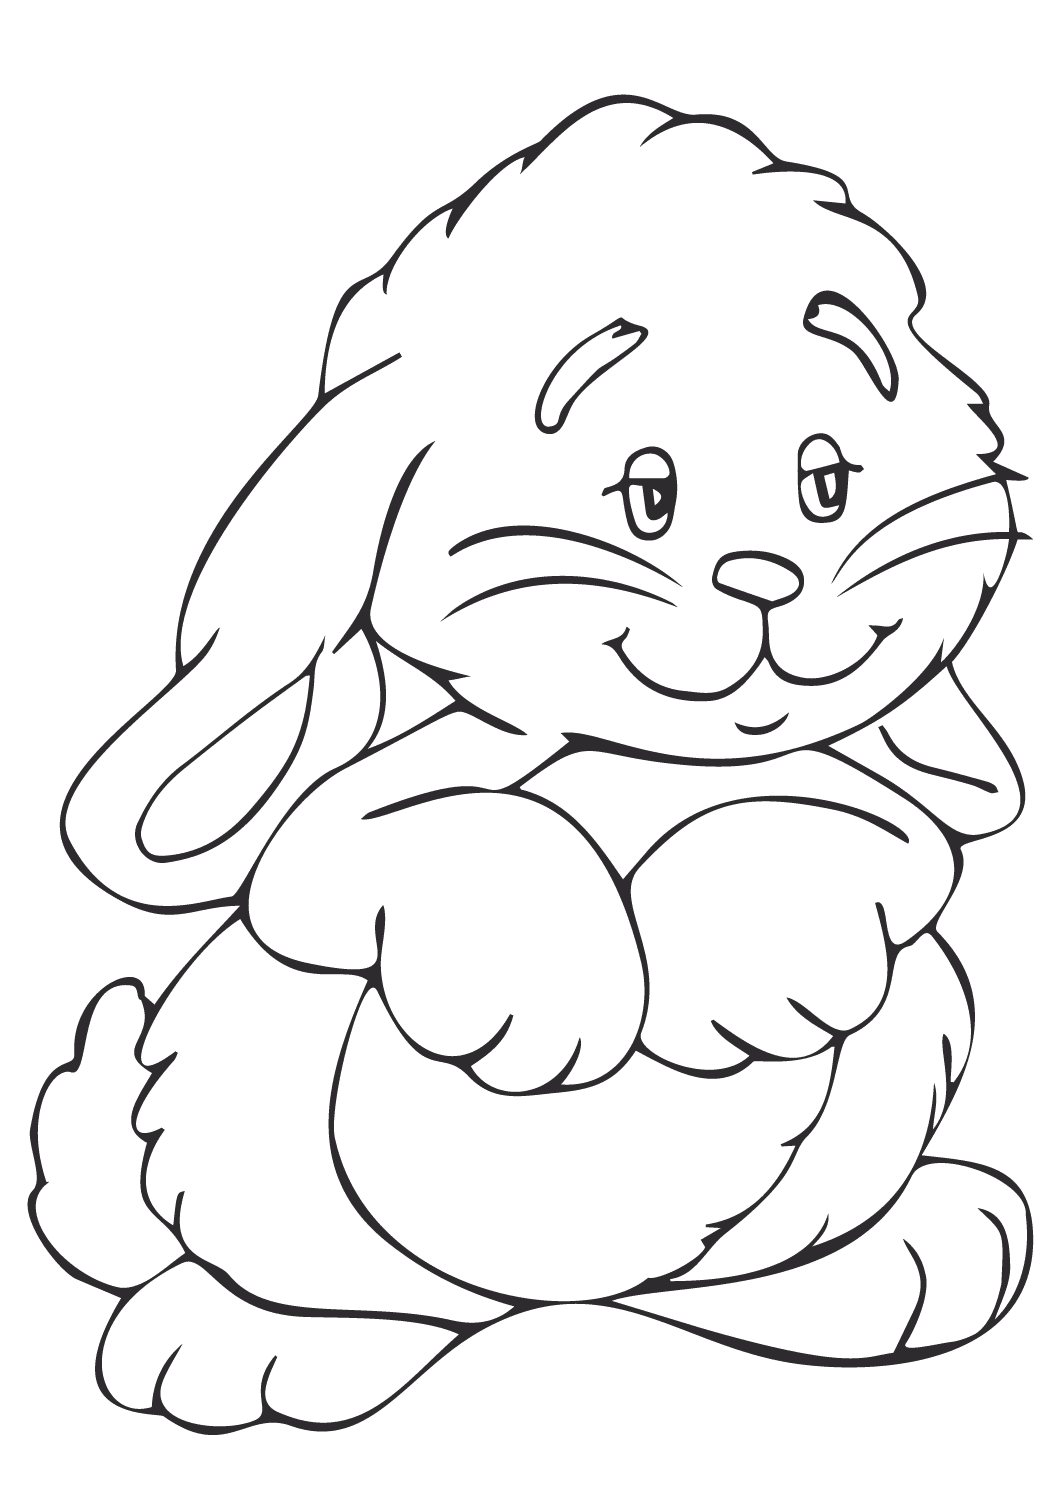 Lief konijntje staand op twee pootjes van Bunny